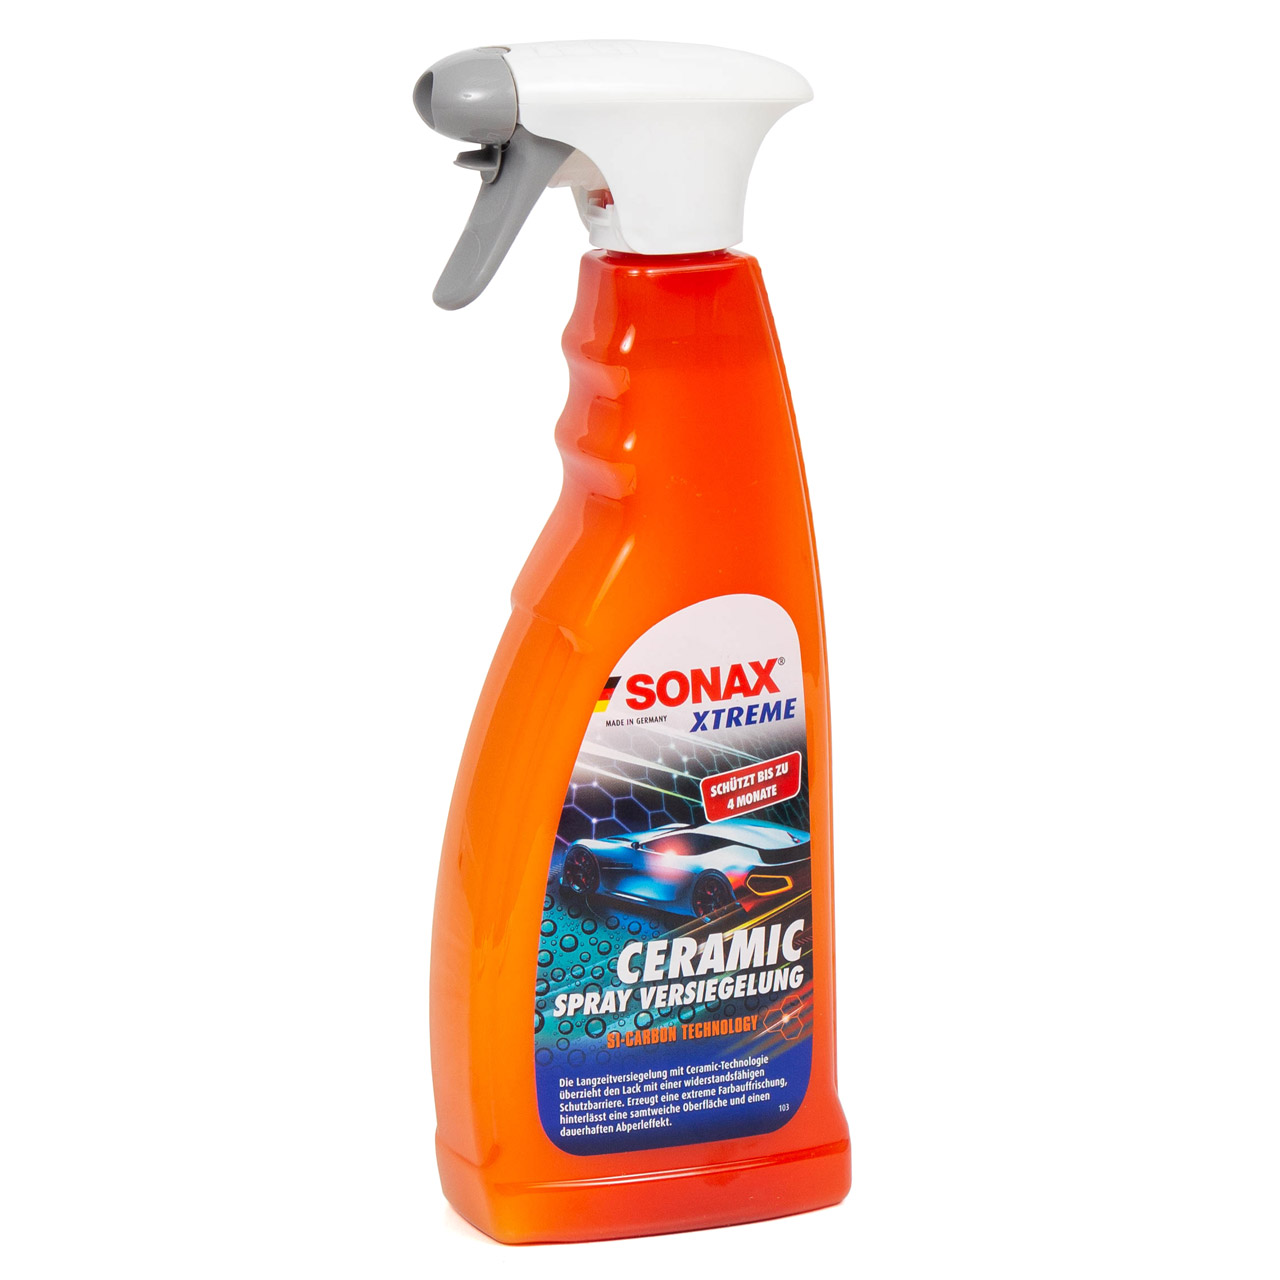 SONAX 02574000 XTREME Ceramic Spray Versiegelung Lackversiegelung Lackschutz 750ml